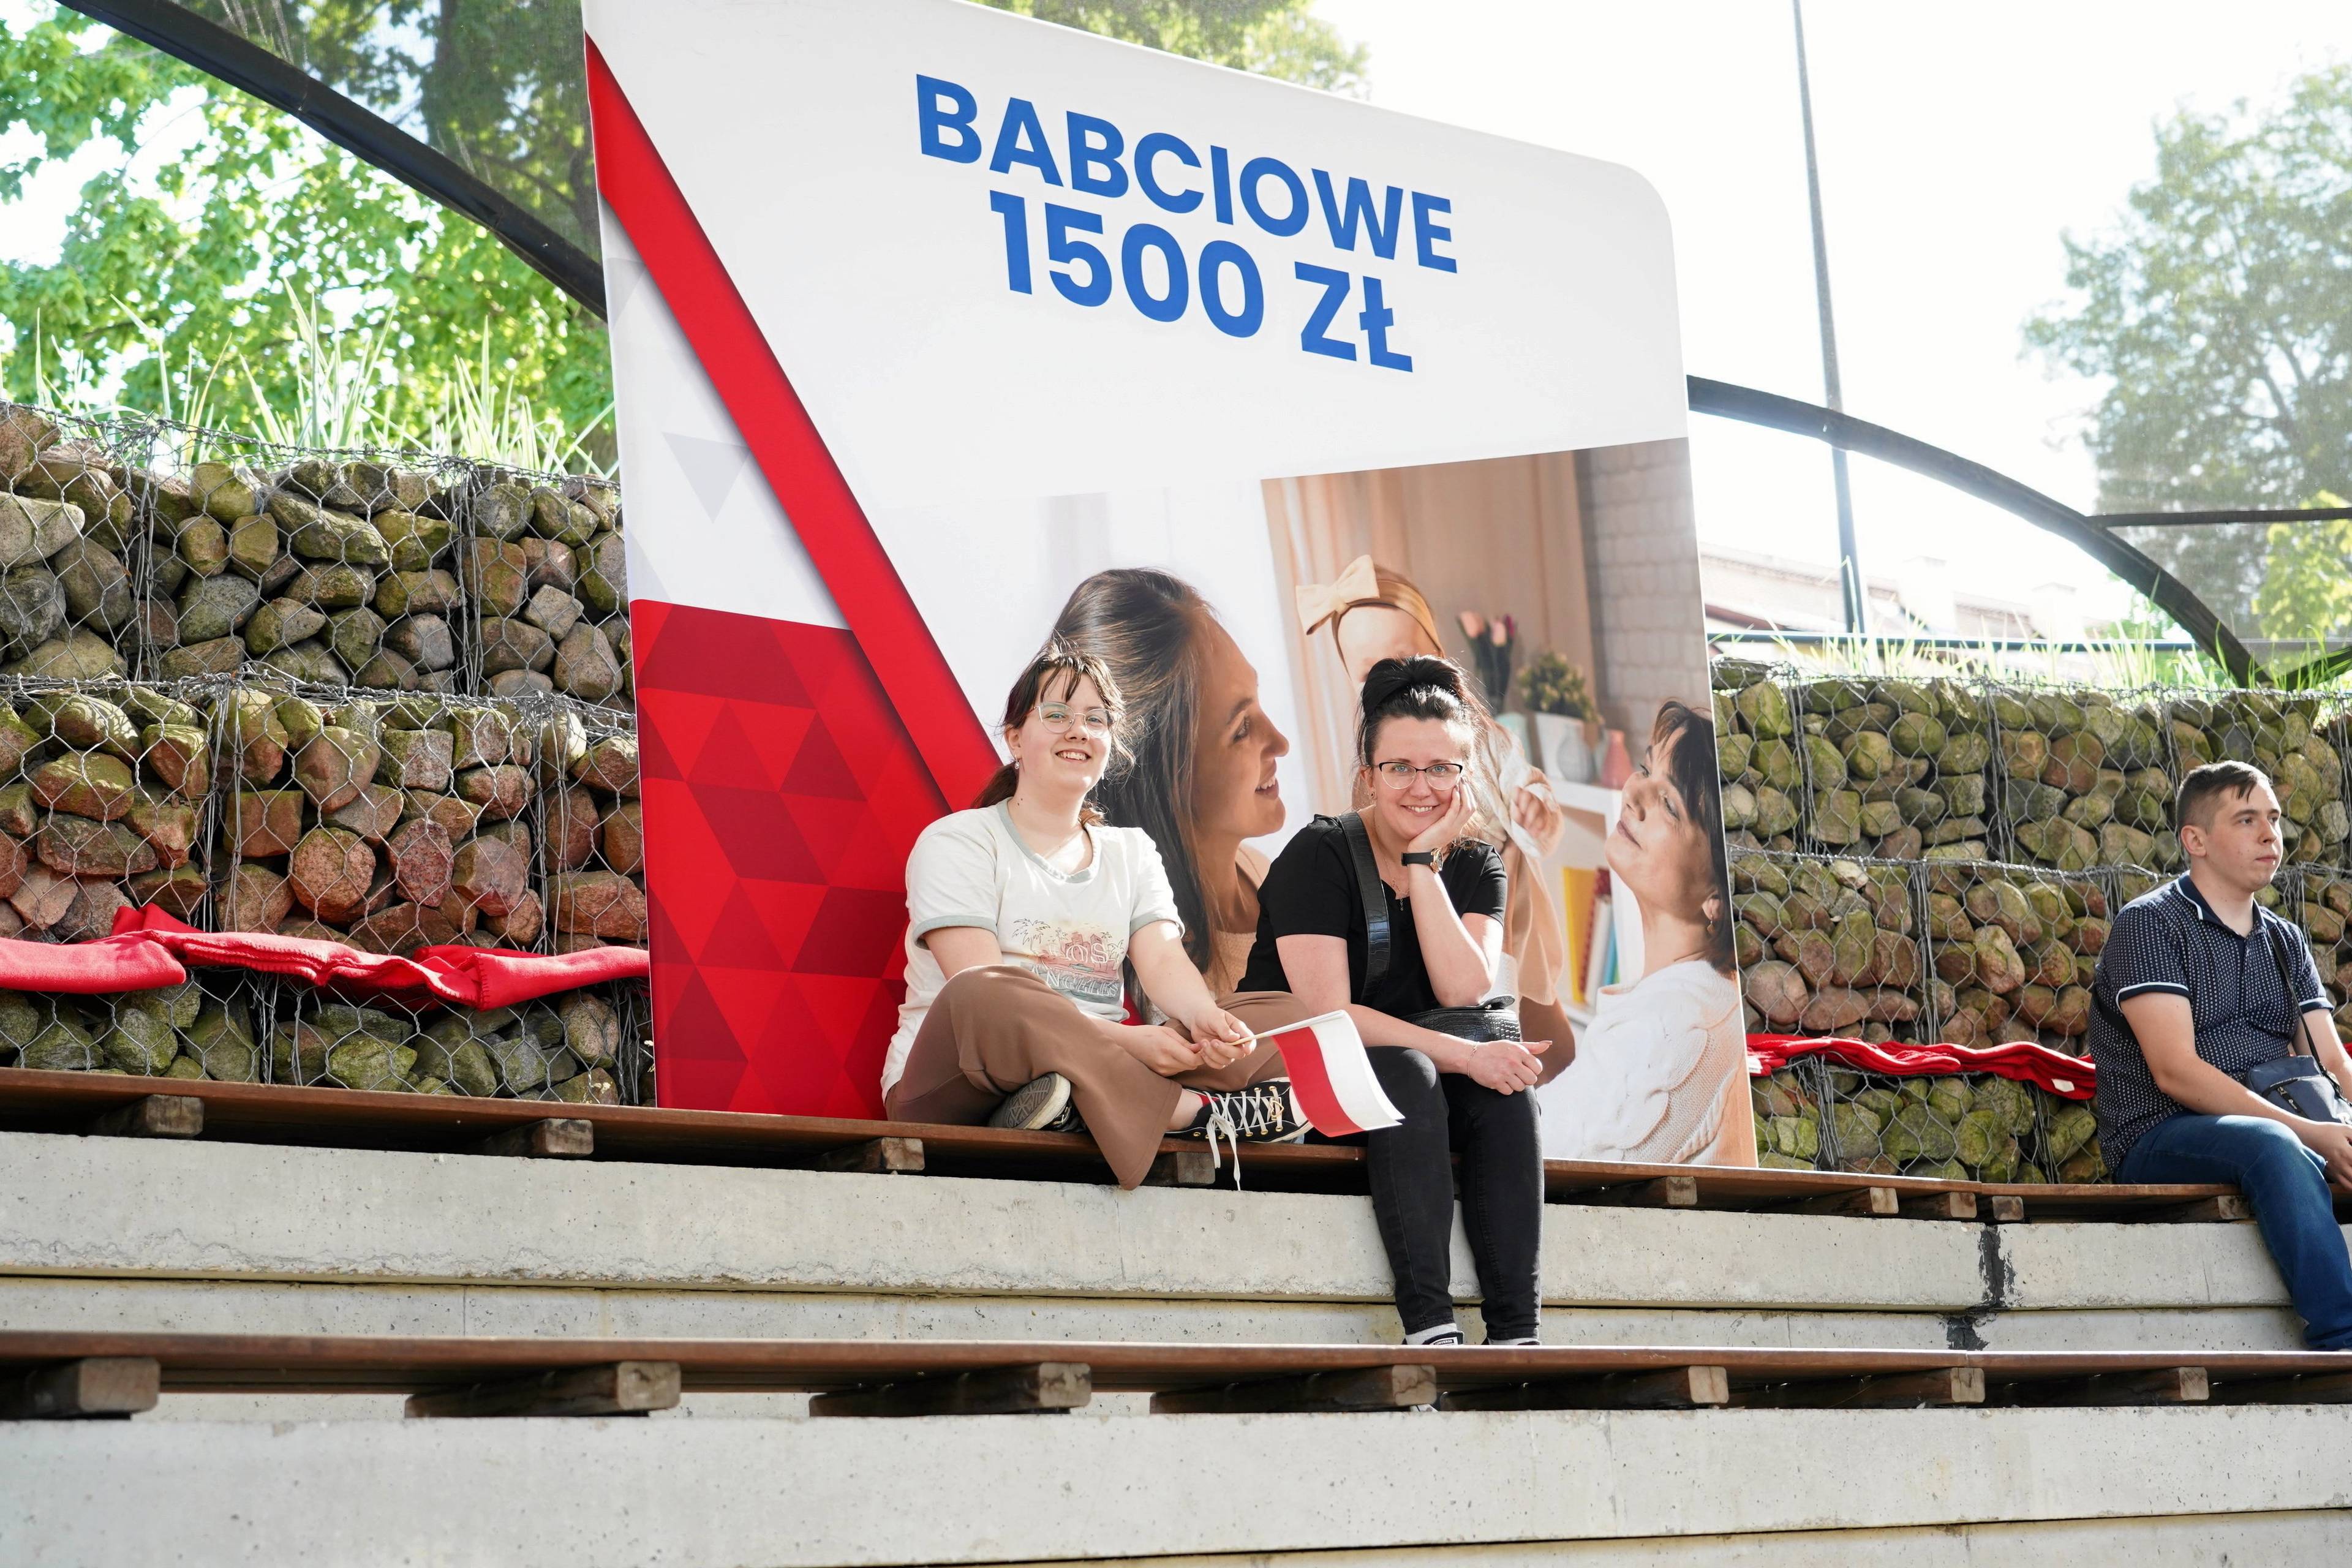 Dwie dziewczyny siedzą na tle plakatu z transparentem "Babciowe 1500 zł"